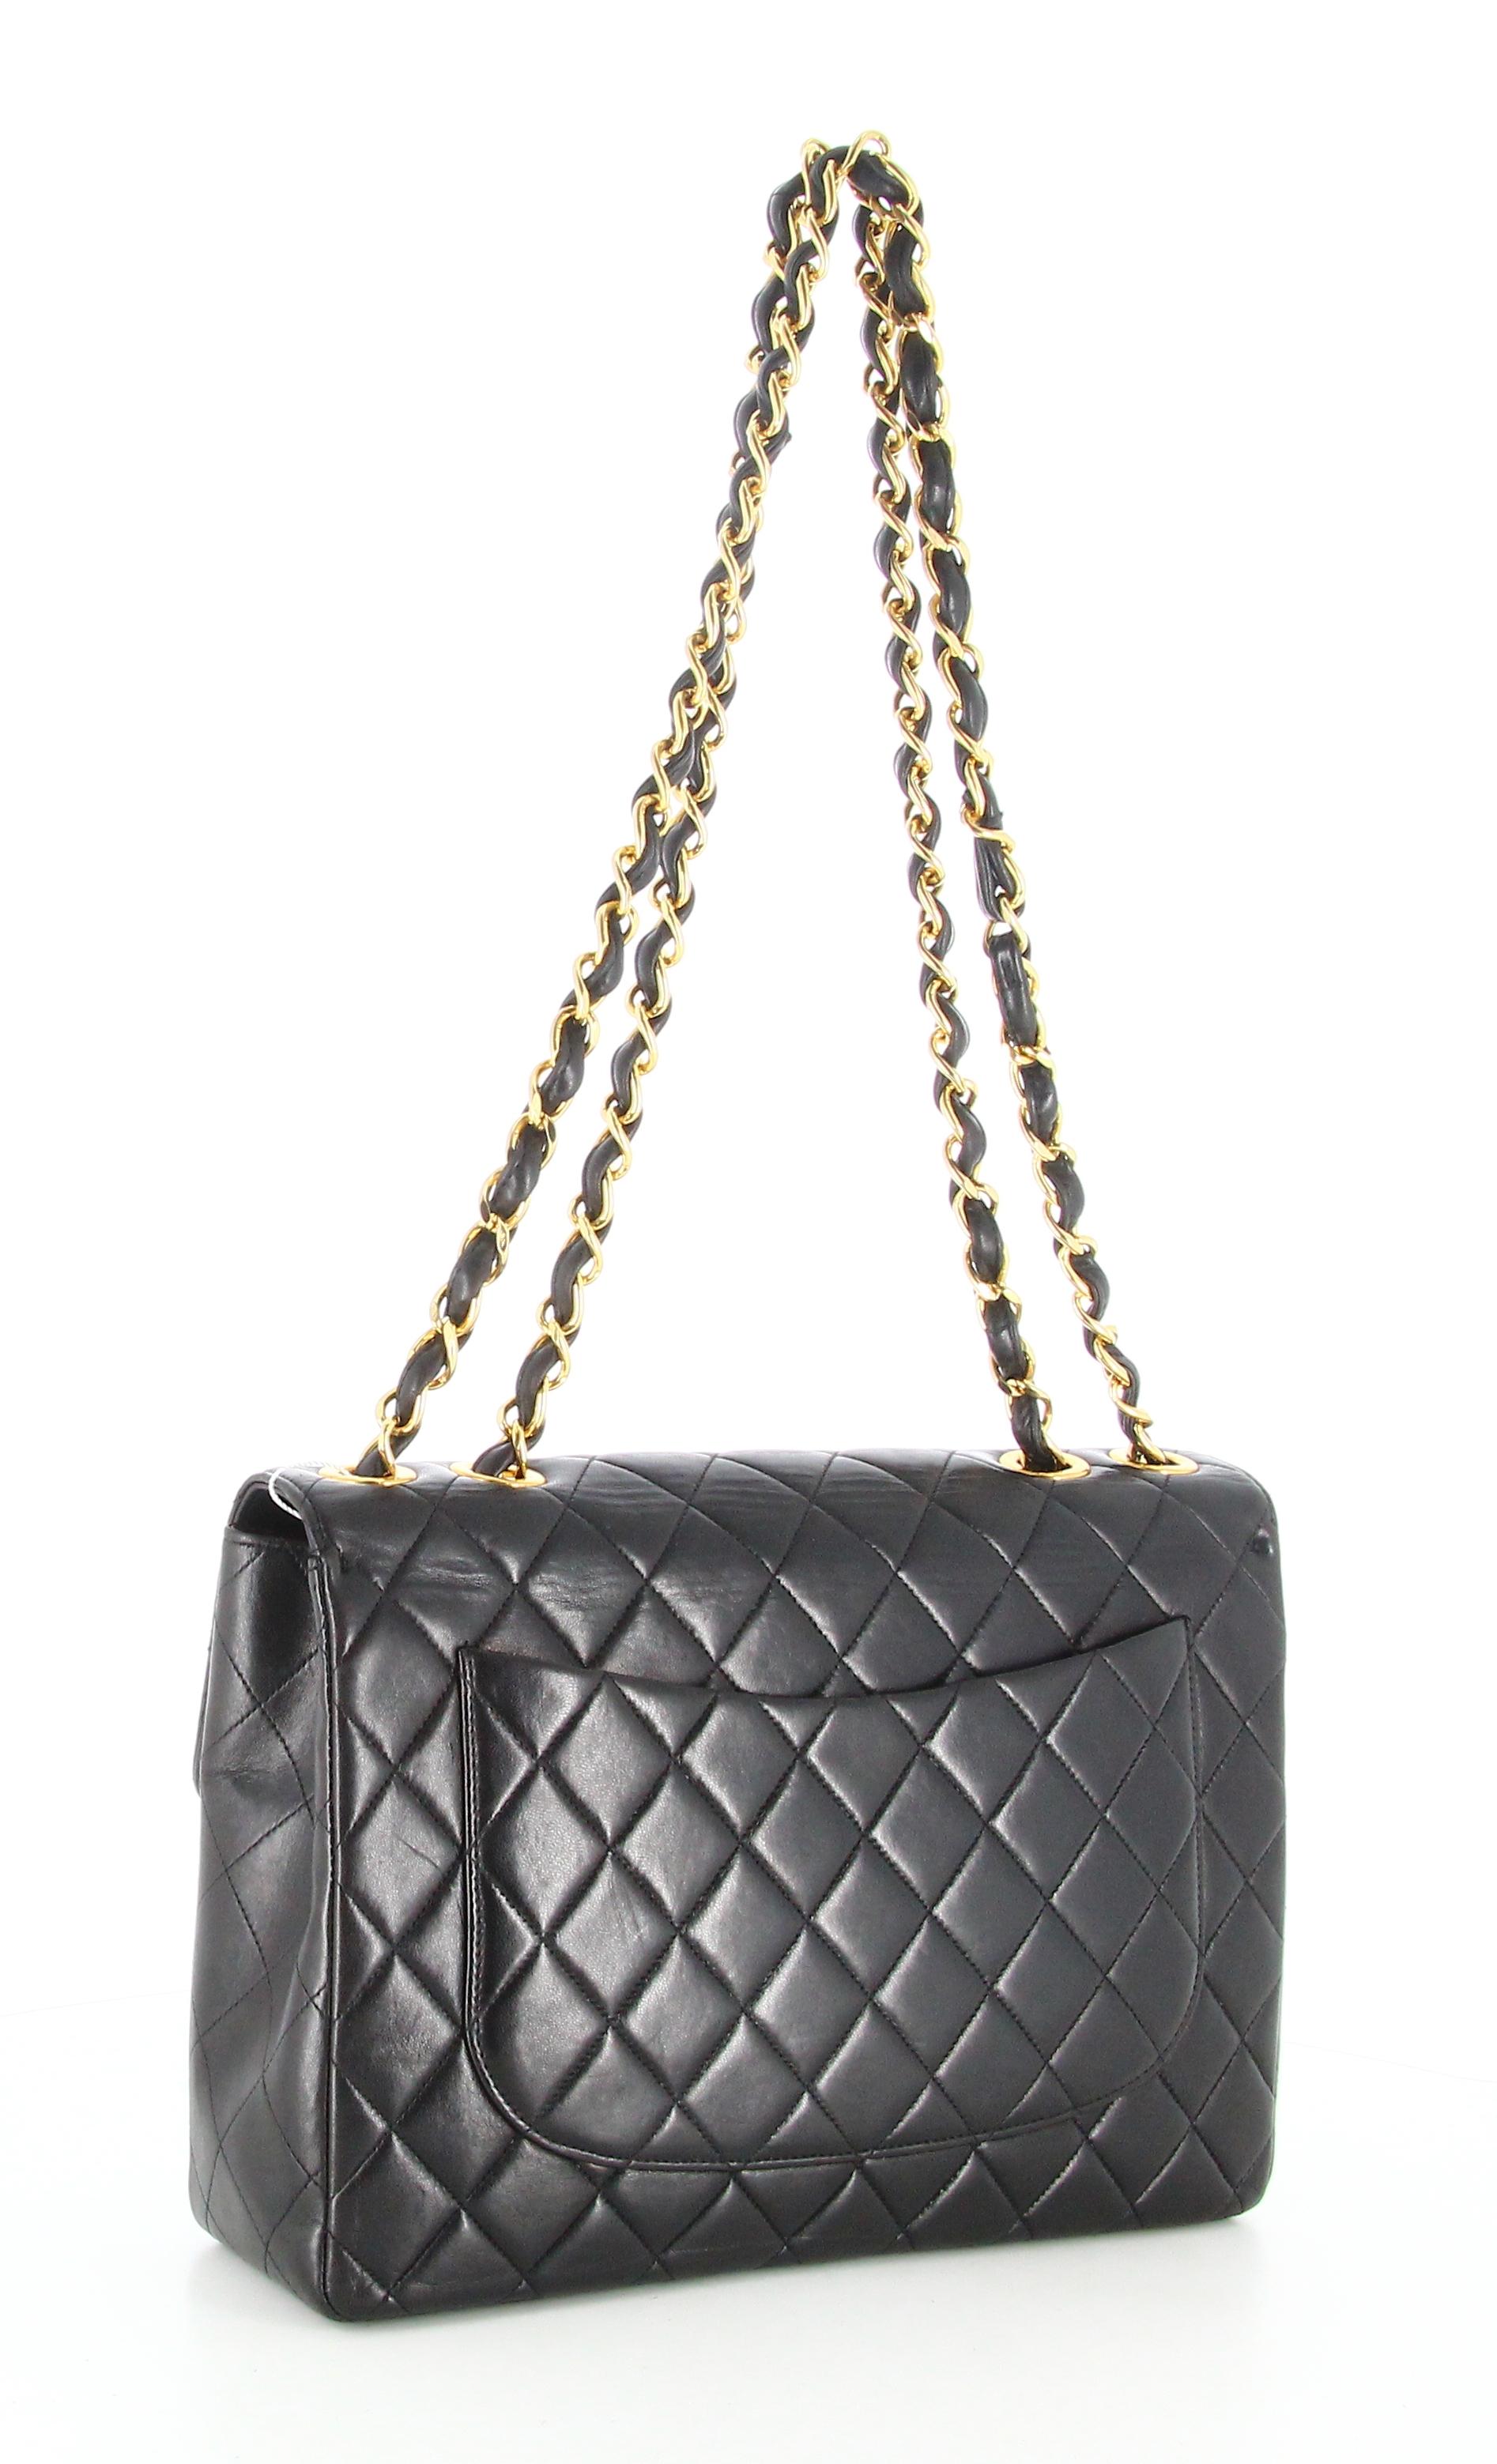 1994 Chanel Timeless Jumbo Quilted Handbag Black Golden 1